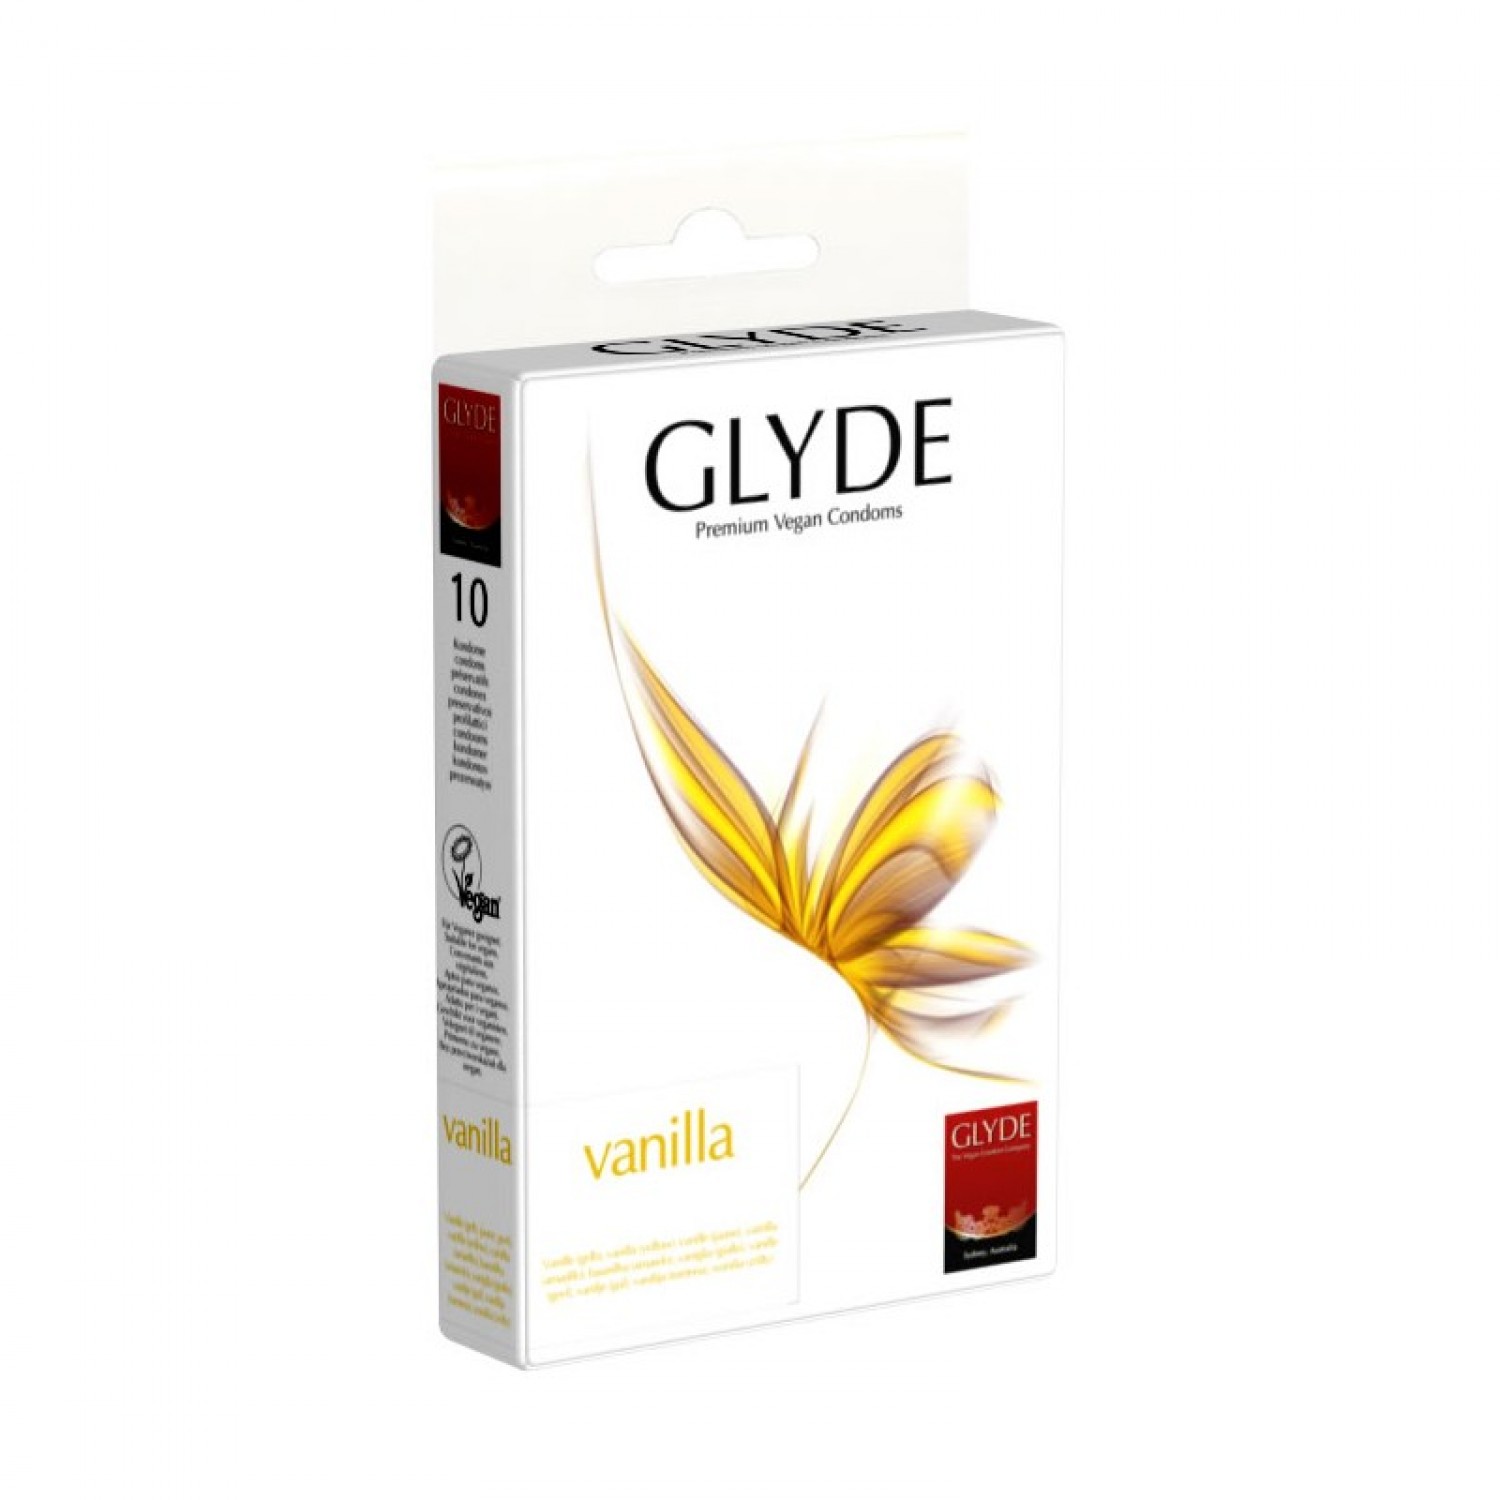 Glyde Vanilla Premium Vegan Condoms